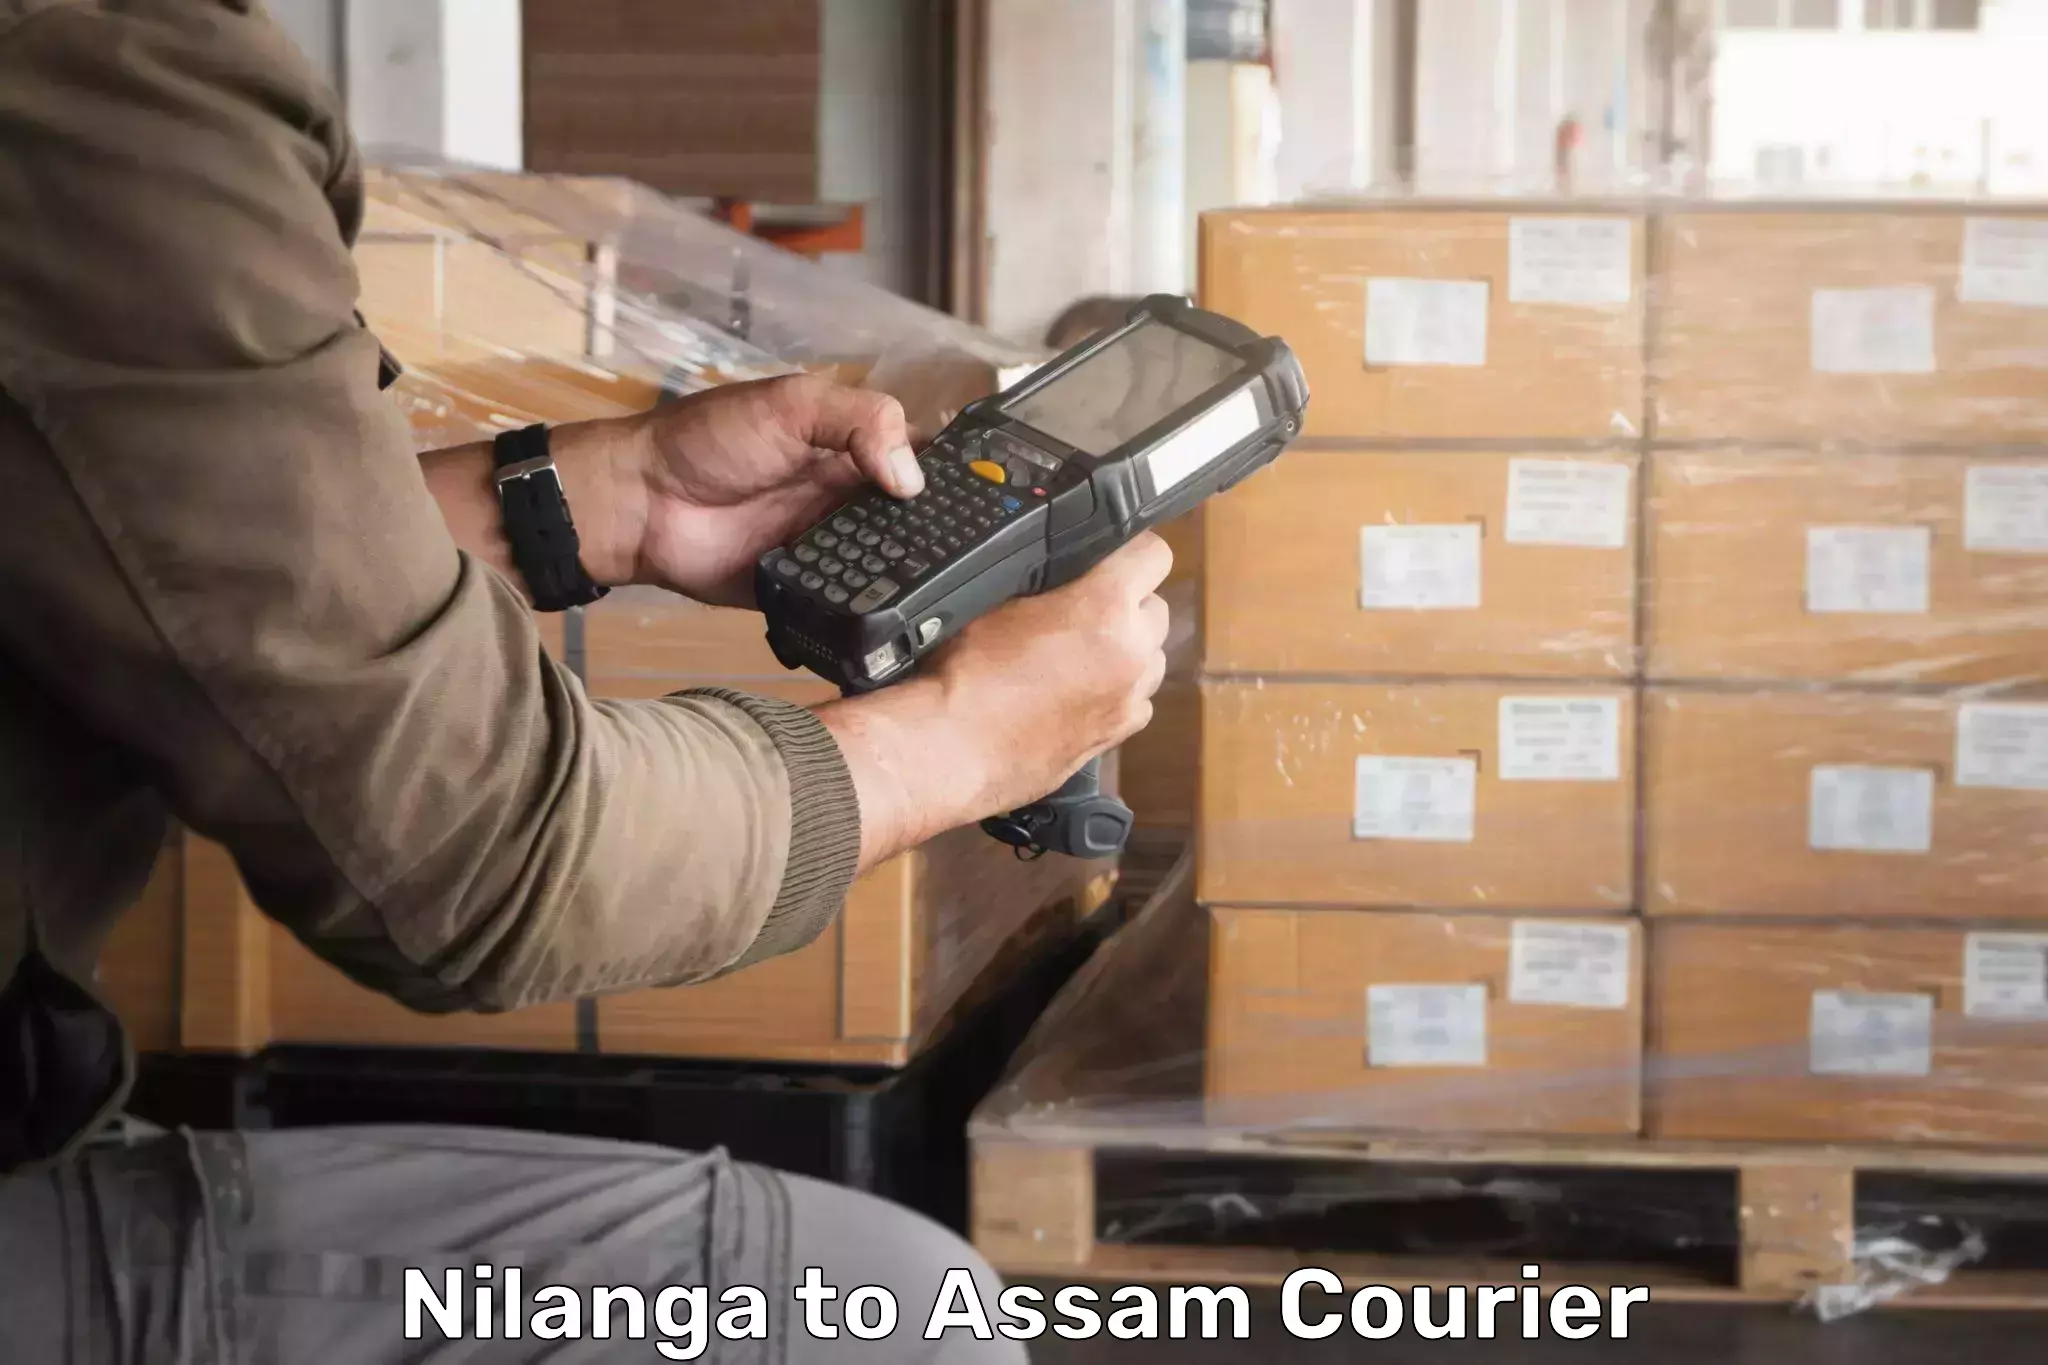 Quick courier services Nilanga to Kalgachia